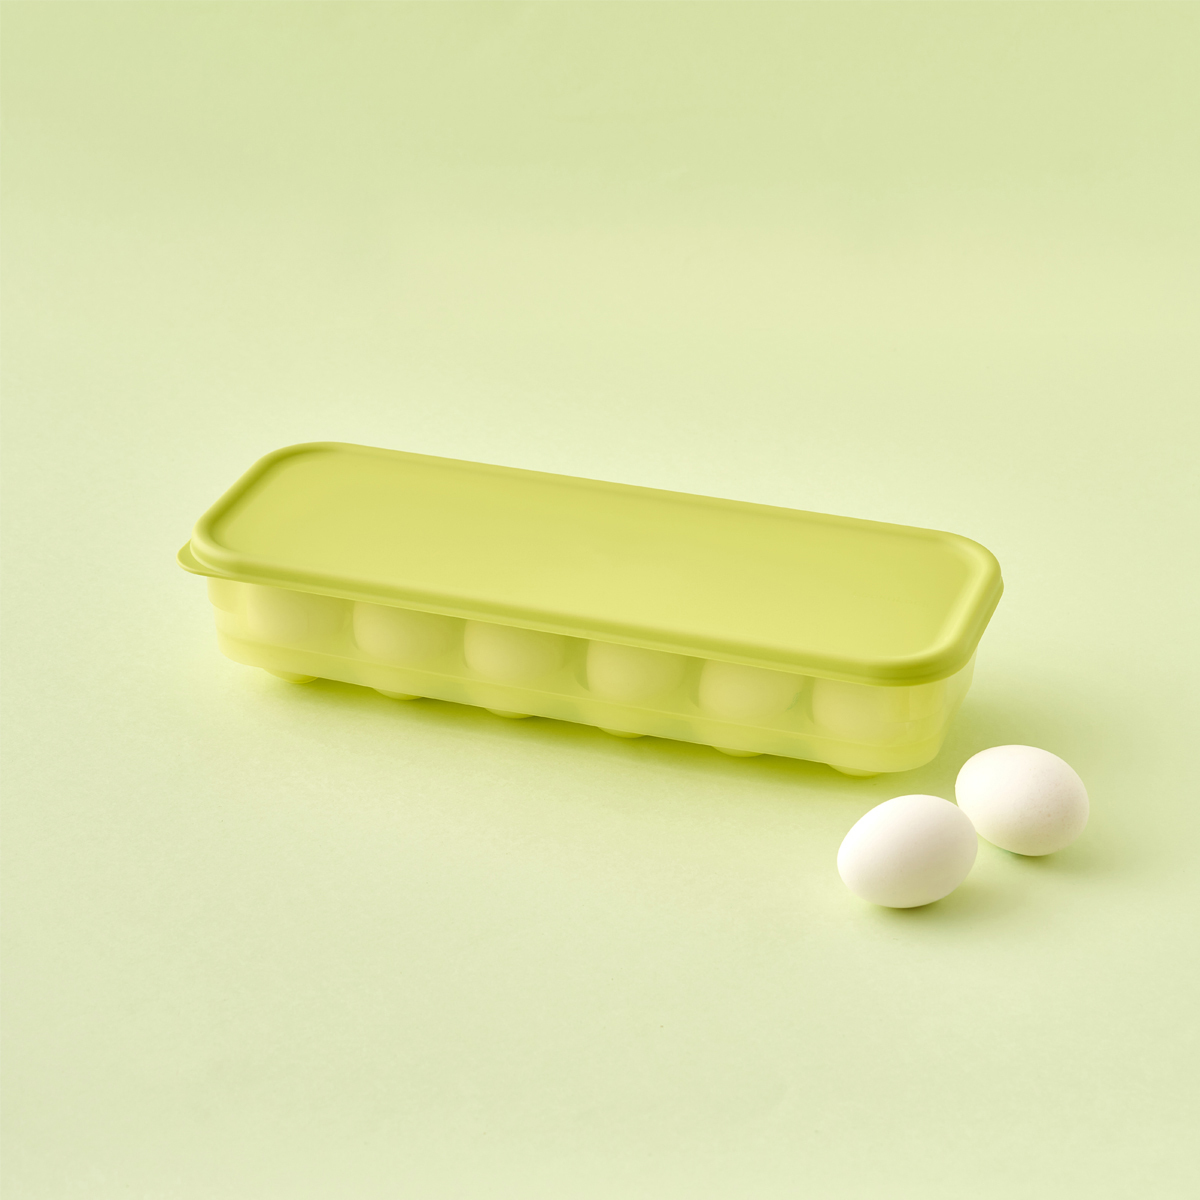 락앤락 스마트킵 프레쉬 계란 보관용기3PK